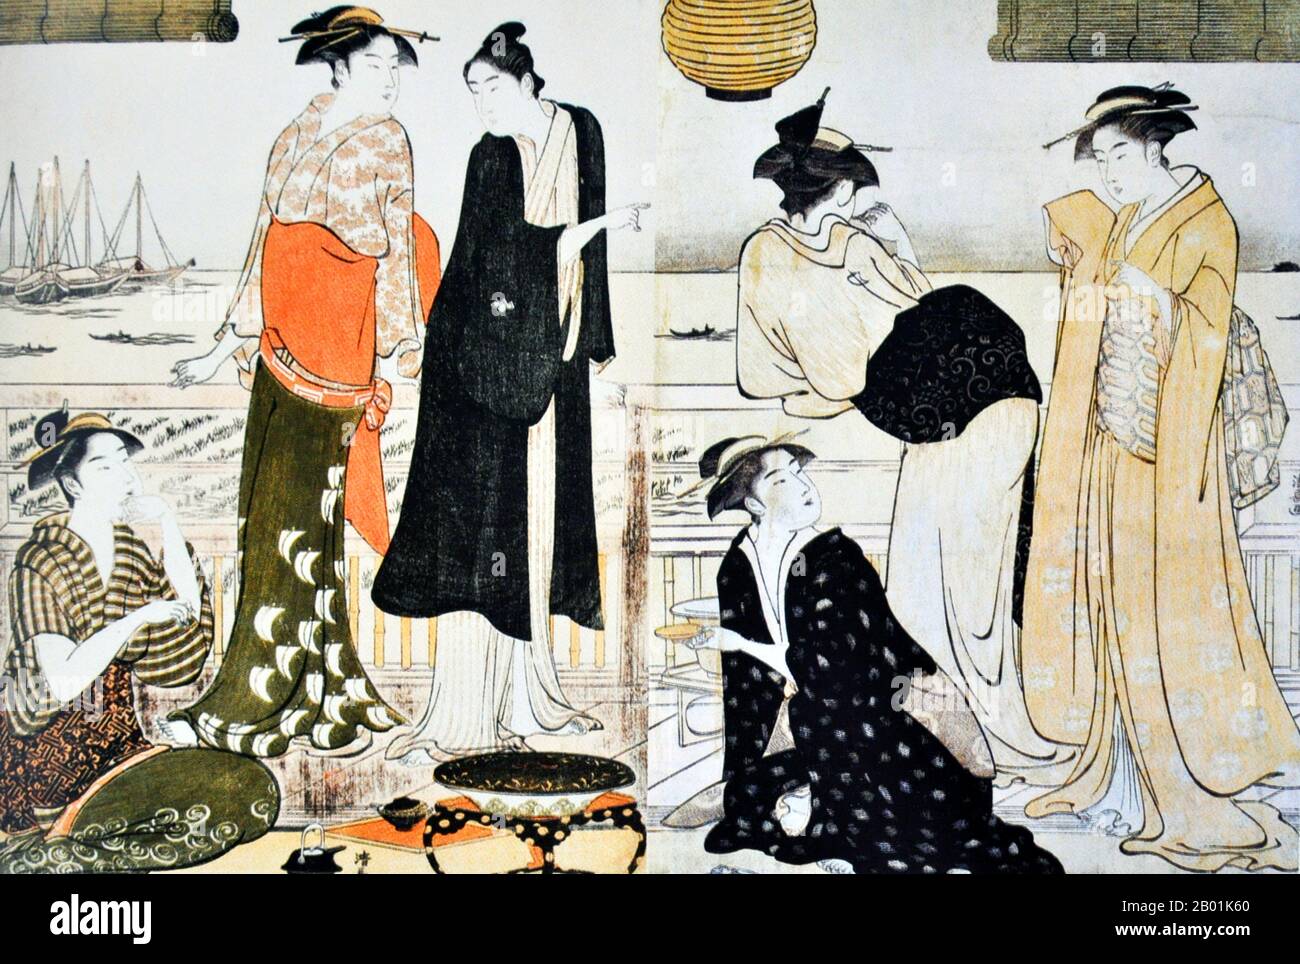 Giappone: "Sesto mese". Ukiyo-e Woodblock print della serie 'Minami jûni kô' di Torii Kiyonaga (1752 - 28 giugno 1815), 1784. Torii Kiyonaga è stato un incisore giapponese ukiyo-e e pittore della scuola Torii. Originariamente Sekiguchi Shinsuke, figlio di un libraio Edo, assunse Torii Kiyonaga come nome d'arte (gō). Anche se non biologicamente imparentato con la famiglia Torii, divenne capo del gruppo dopo la morte del padre adottivo e insegnante Torii Kiyomitsu. Foto Stock